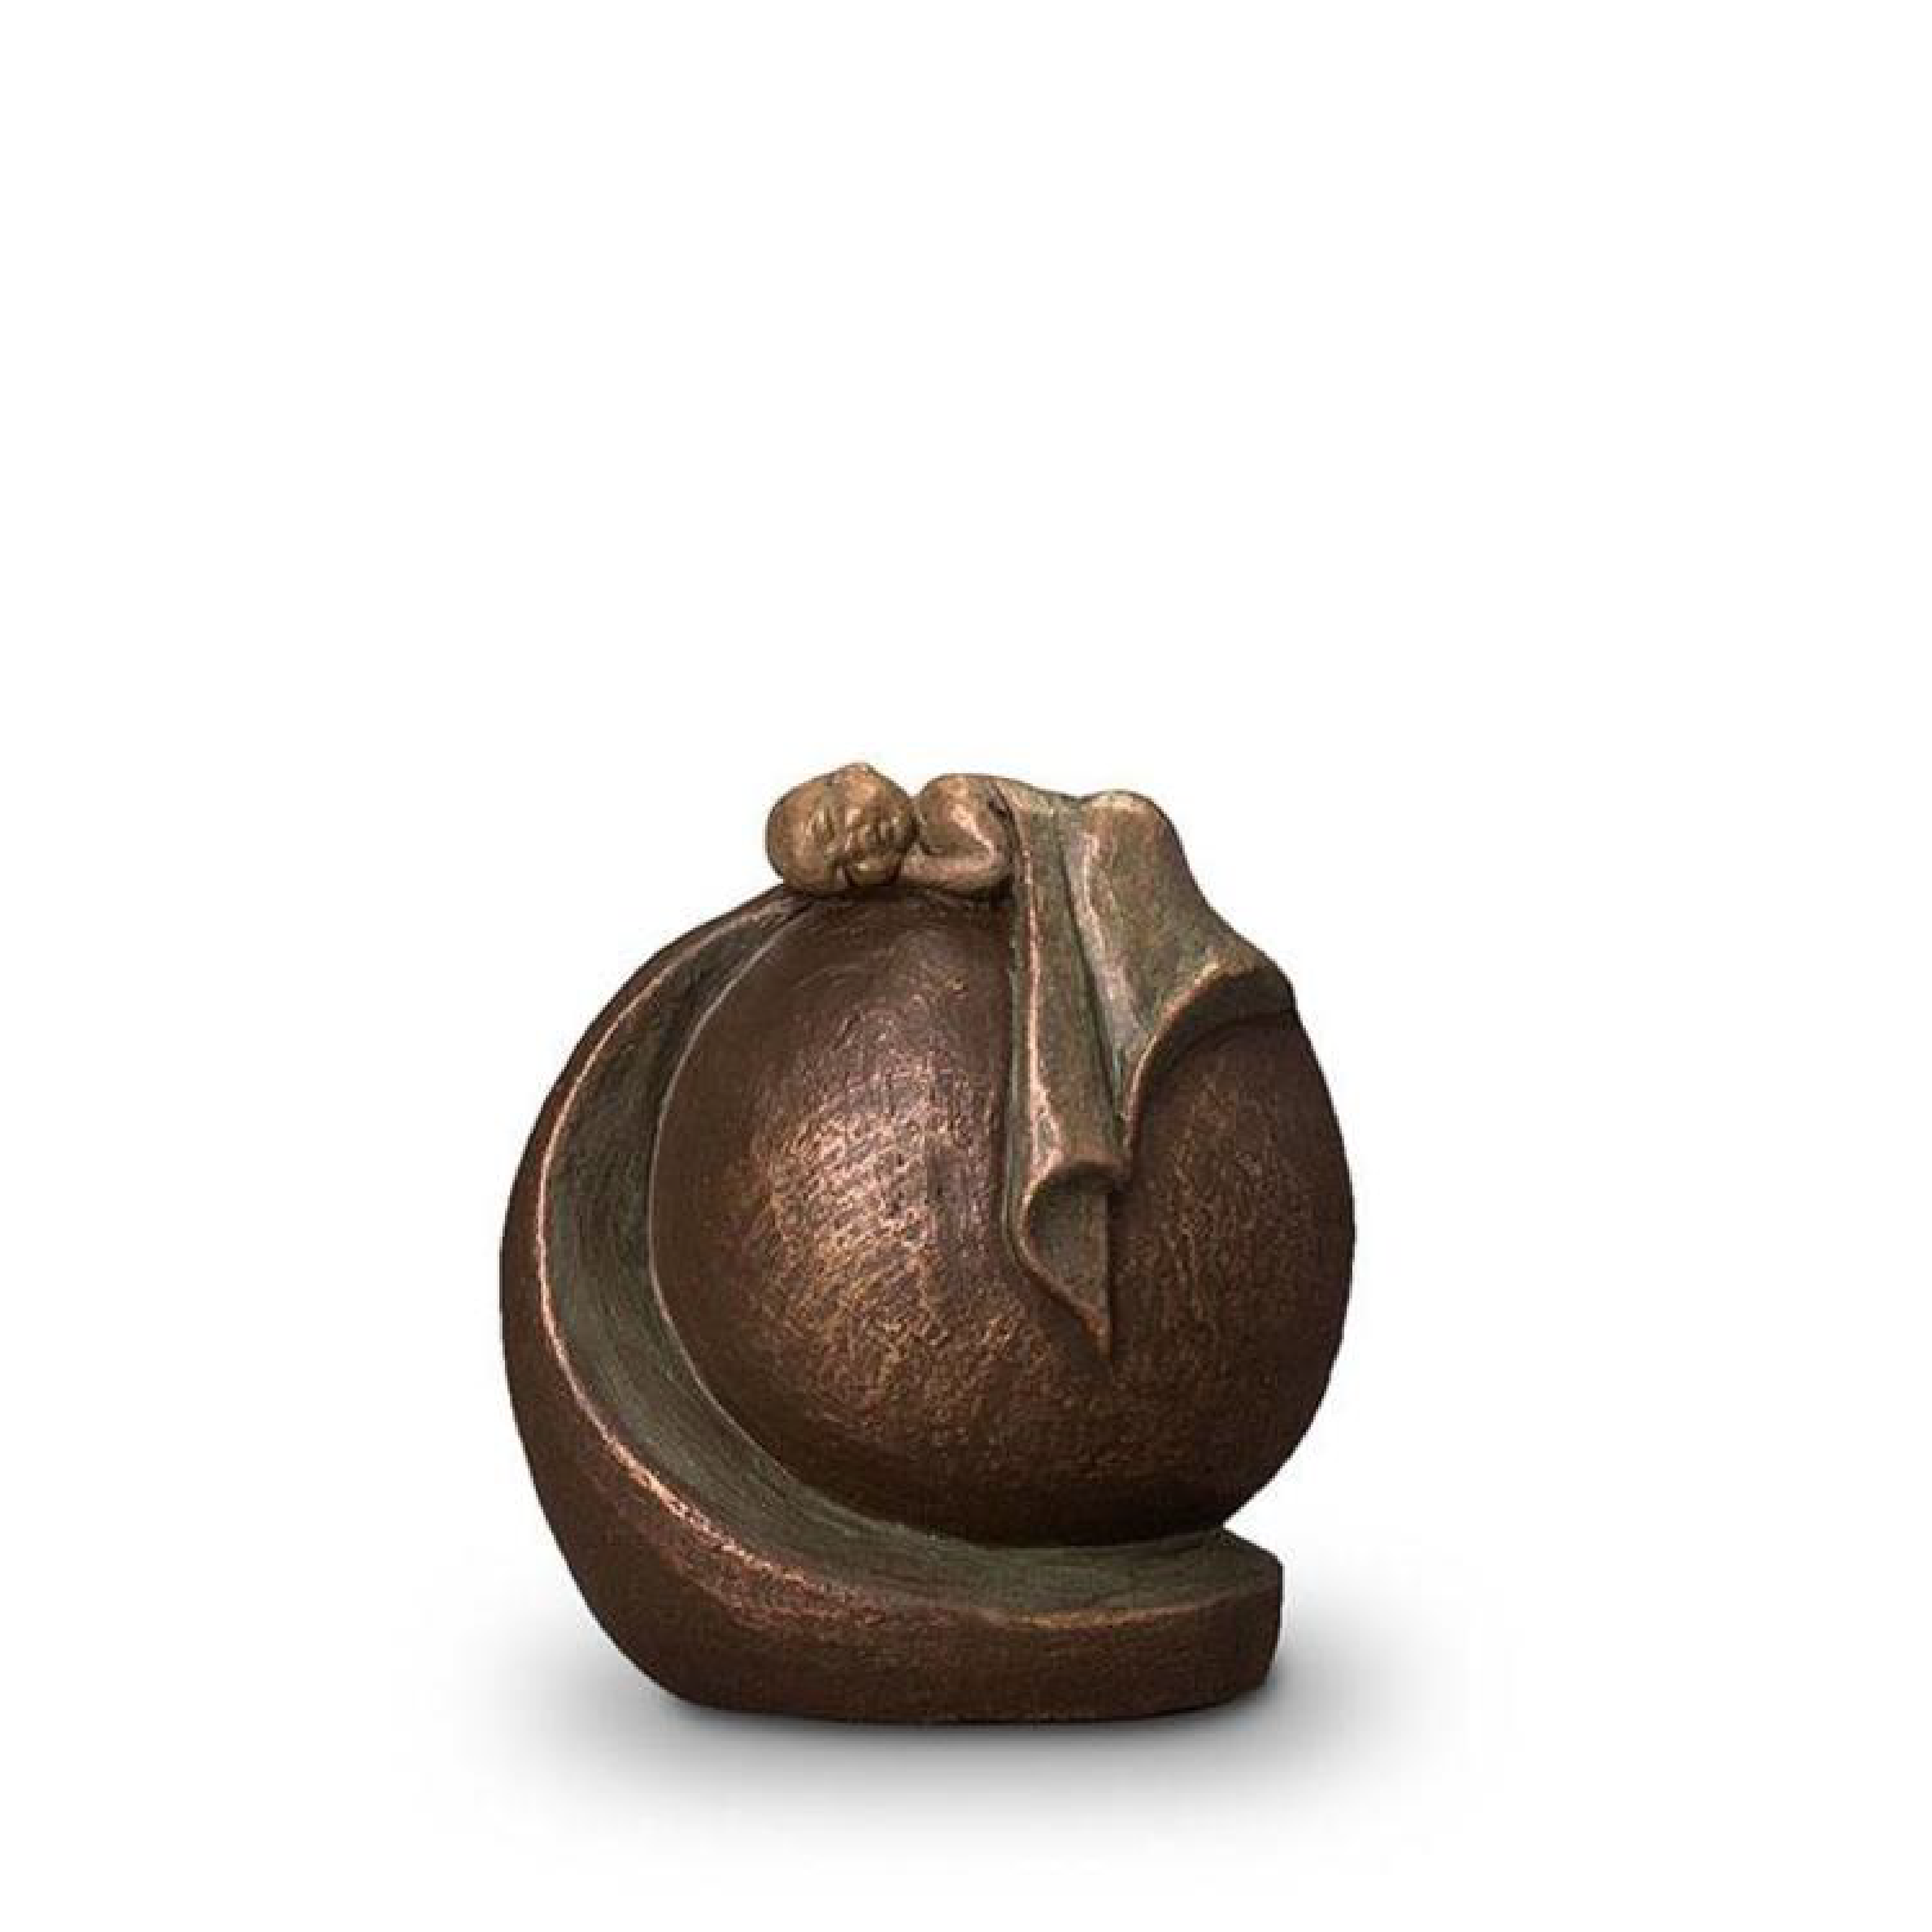 Geert Kunen UGK 005 A Keramische Urn Brons in Vrede